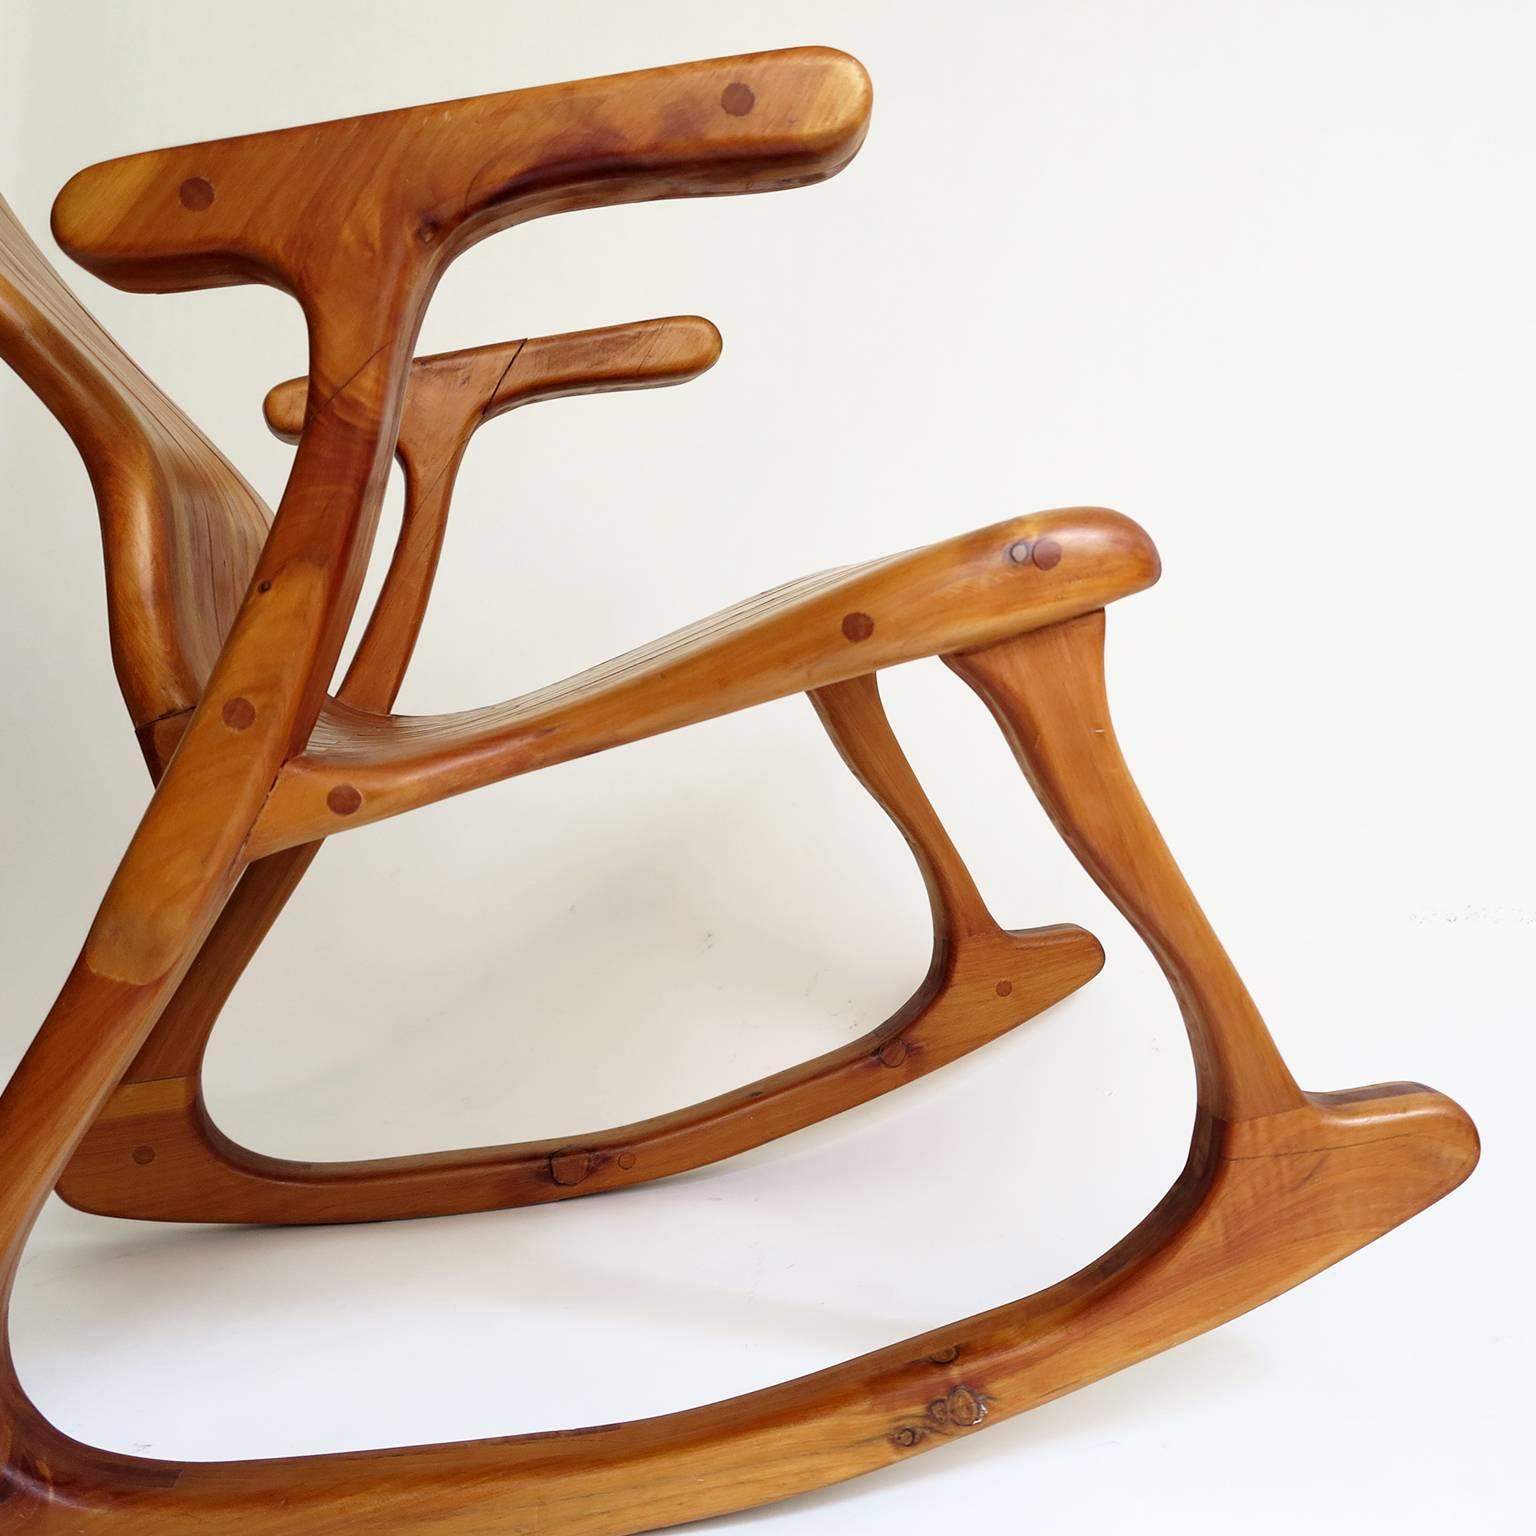 Hand-Crafted Victor Klassen Rocking Chair, Circa 1970